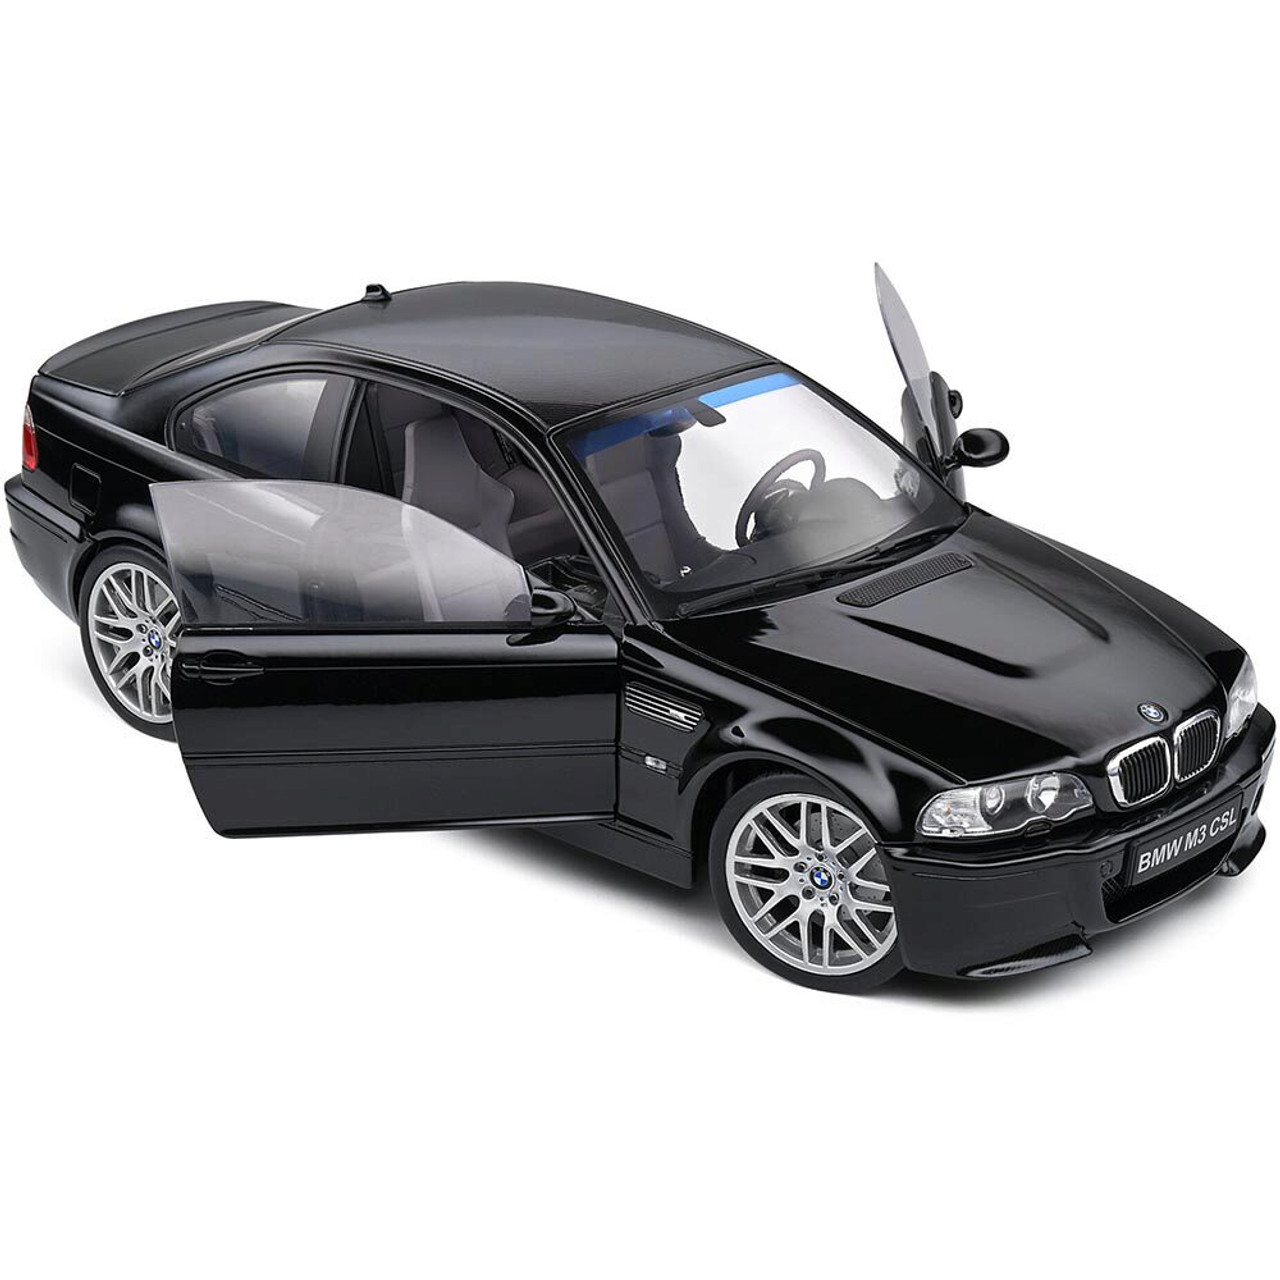 2003 BMW E46 CSL Black Diecast Model Car | Solido